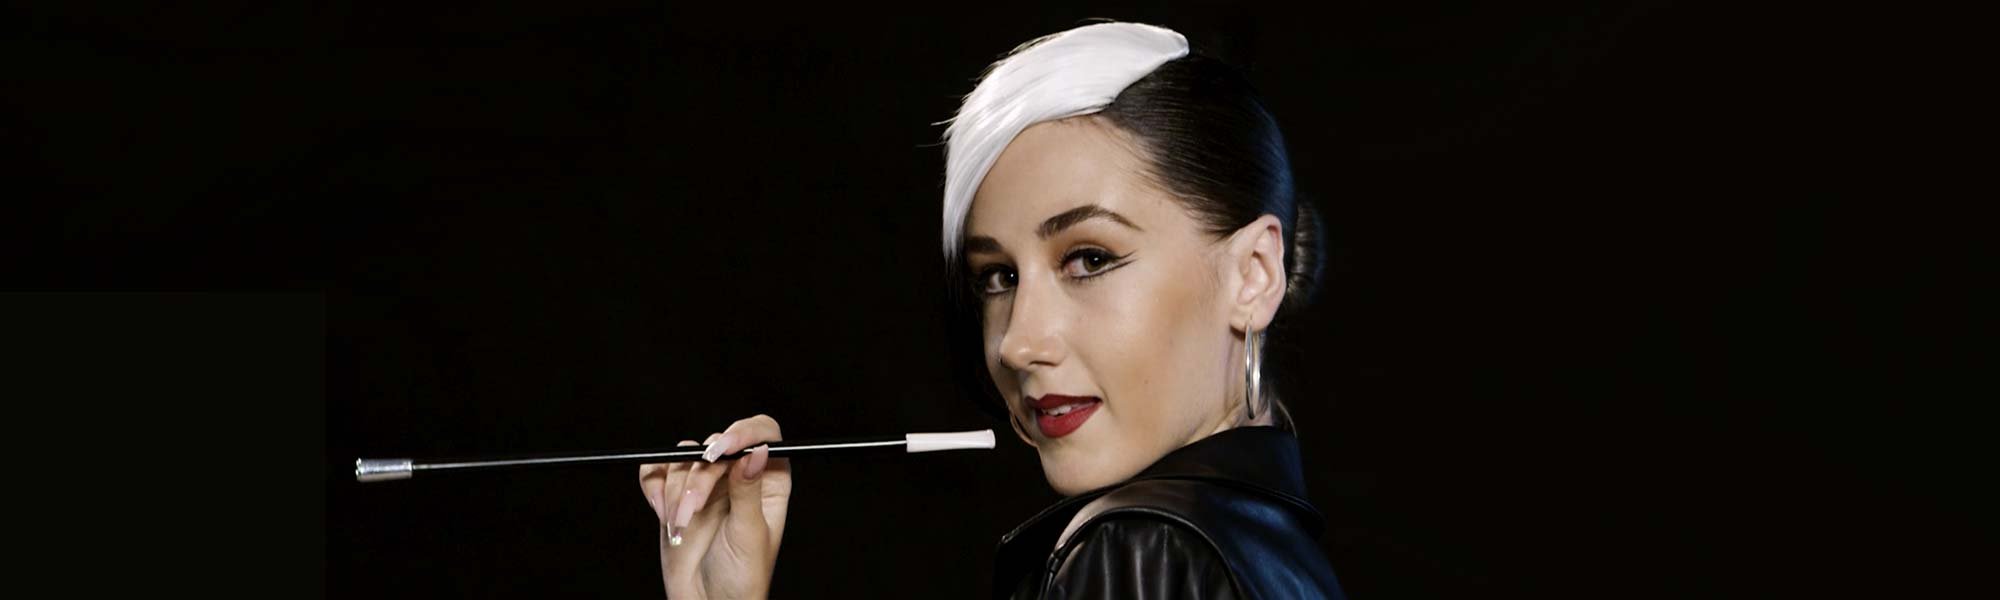 Hazte un maquillaje Cruella de Vil con los productos makeup de L’Oréal Paris y desde ya te decimos que la máscara de pestañas Air Volume no puede faltar. ¿Has visto a Judith Jaso? ¡Pues a ver si consigues copiarla!